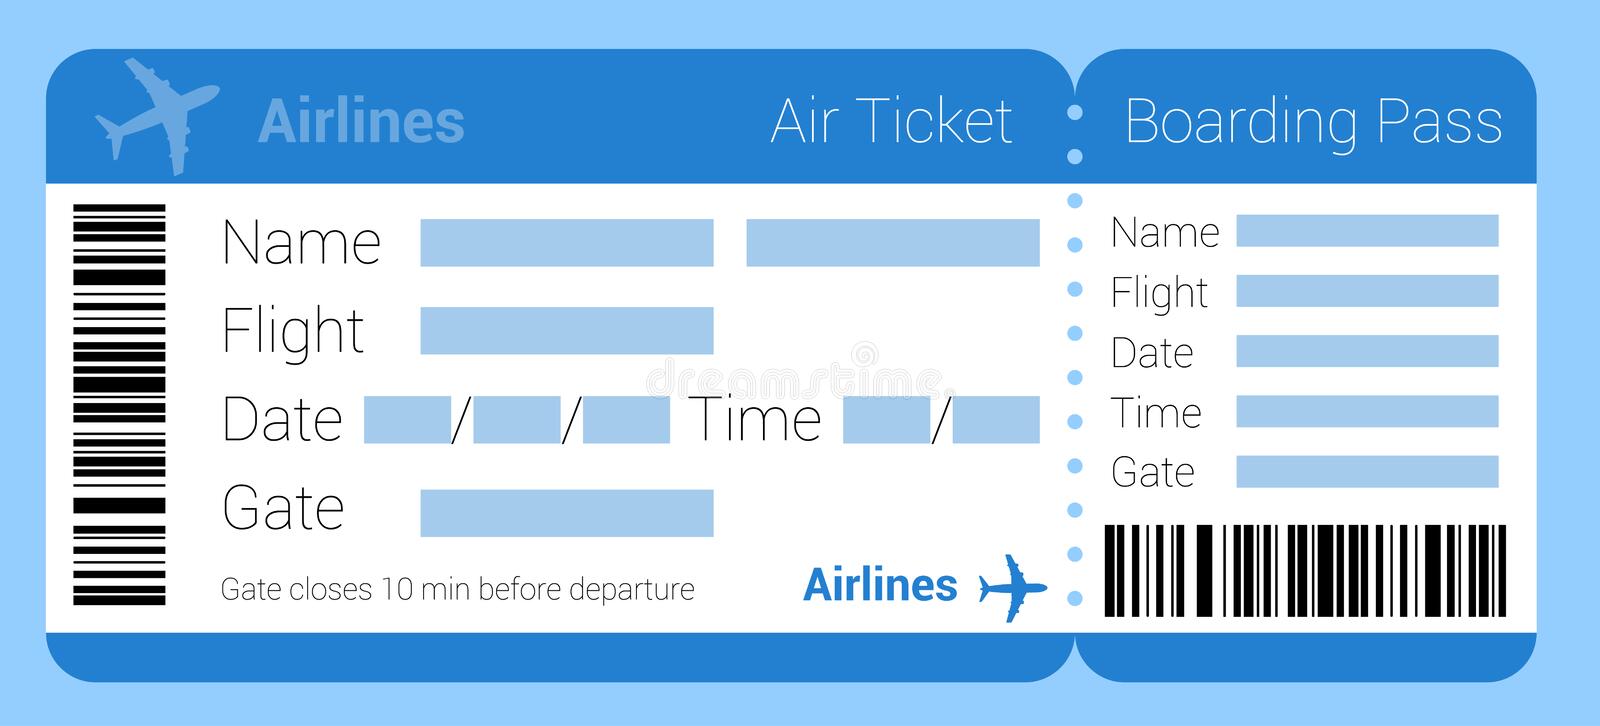 Air-Ticket